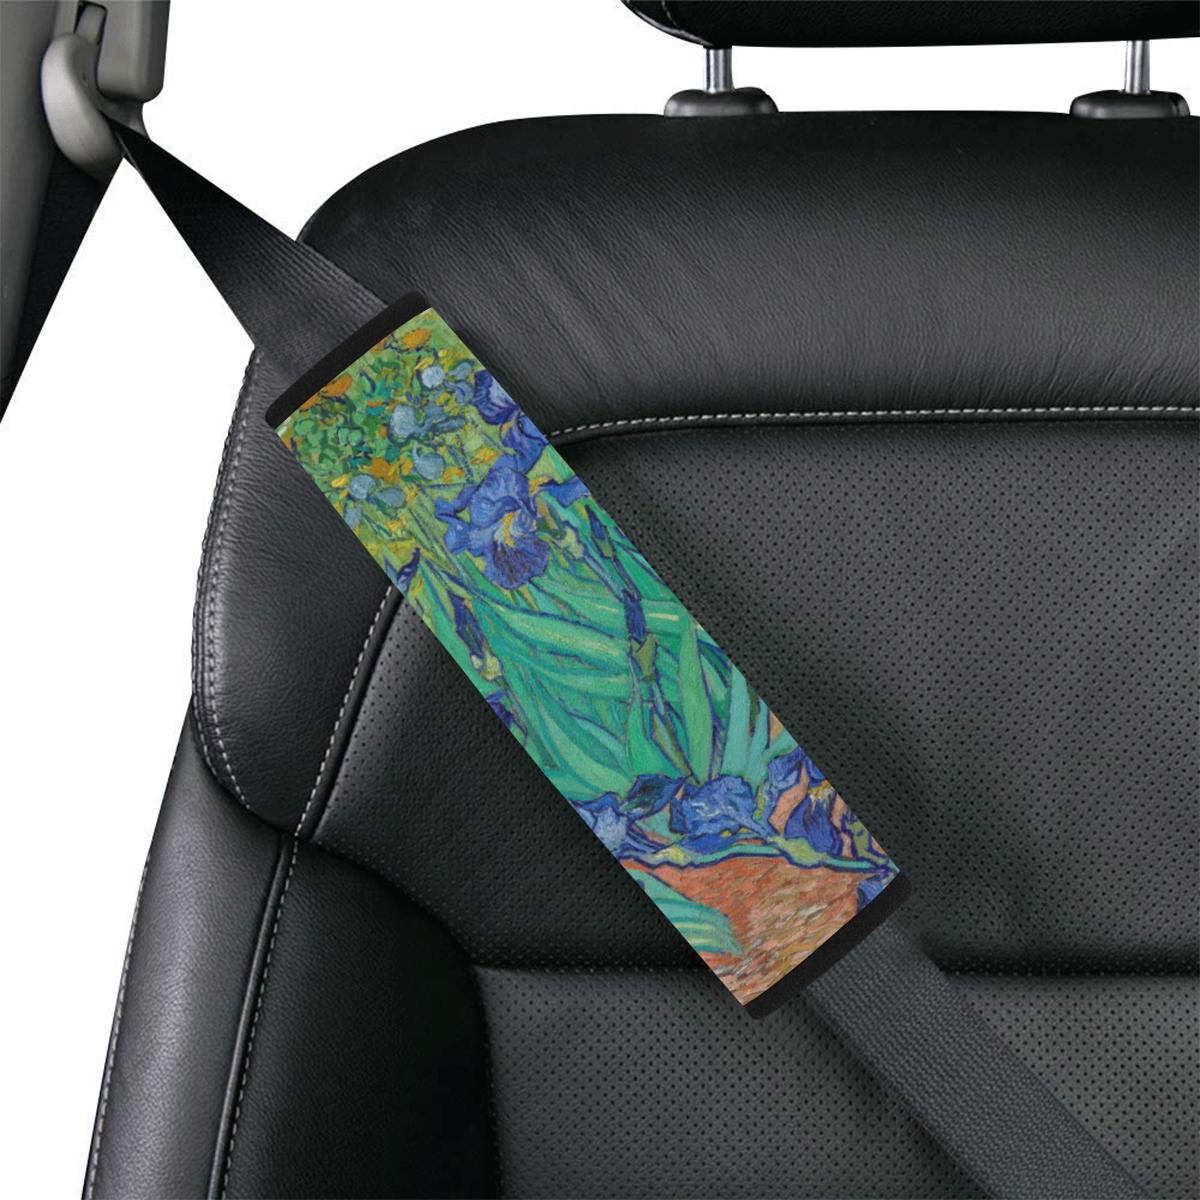 Irises Seat Belt Cover